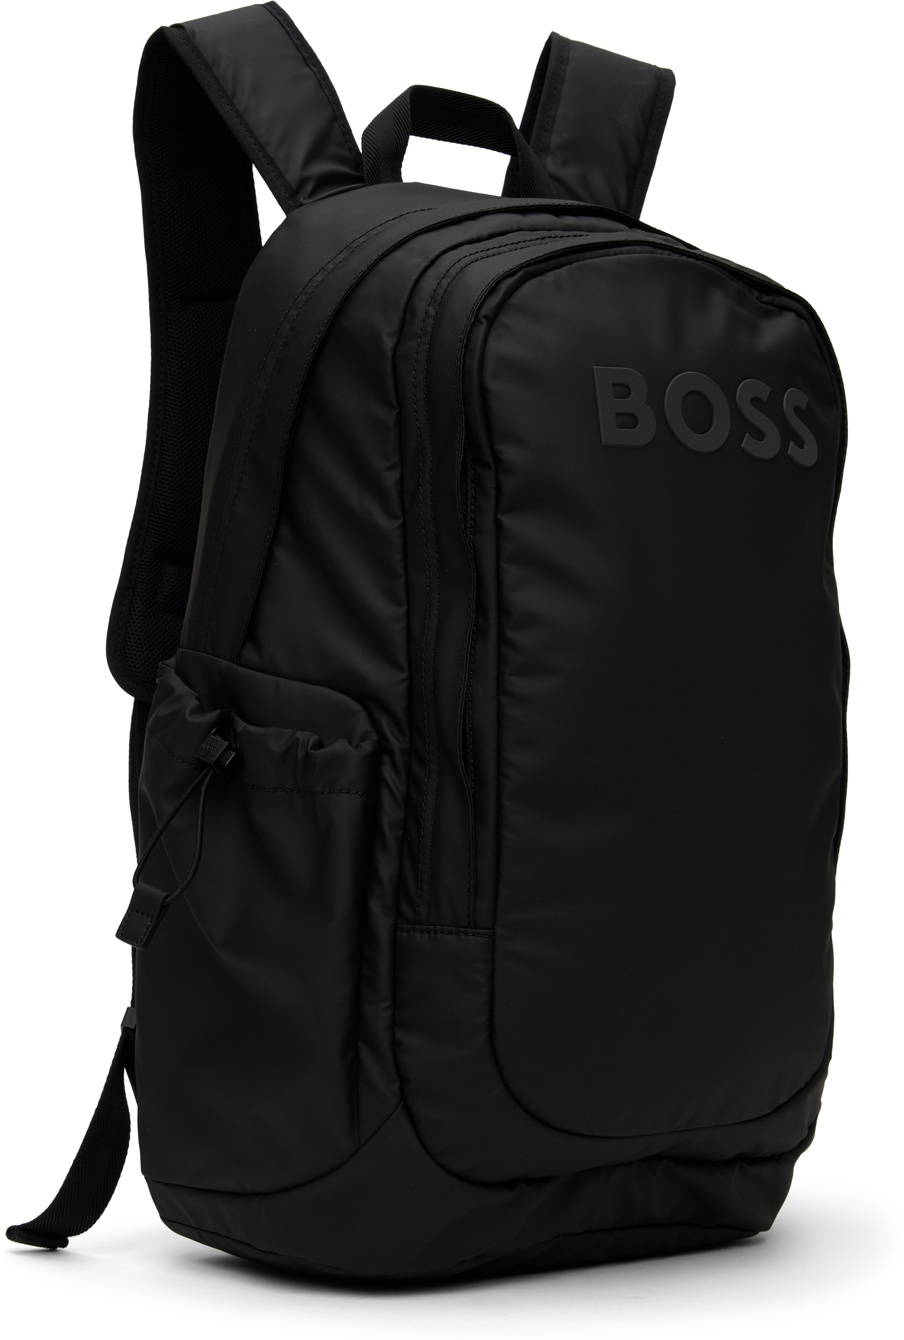 BOSS Black Bonded Backpack BOSS